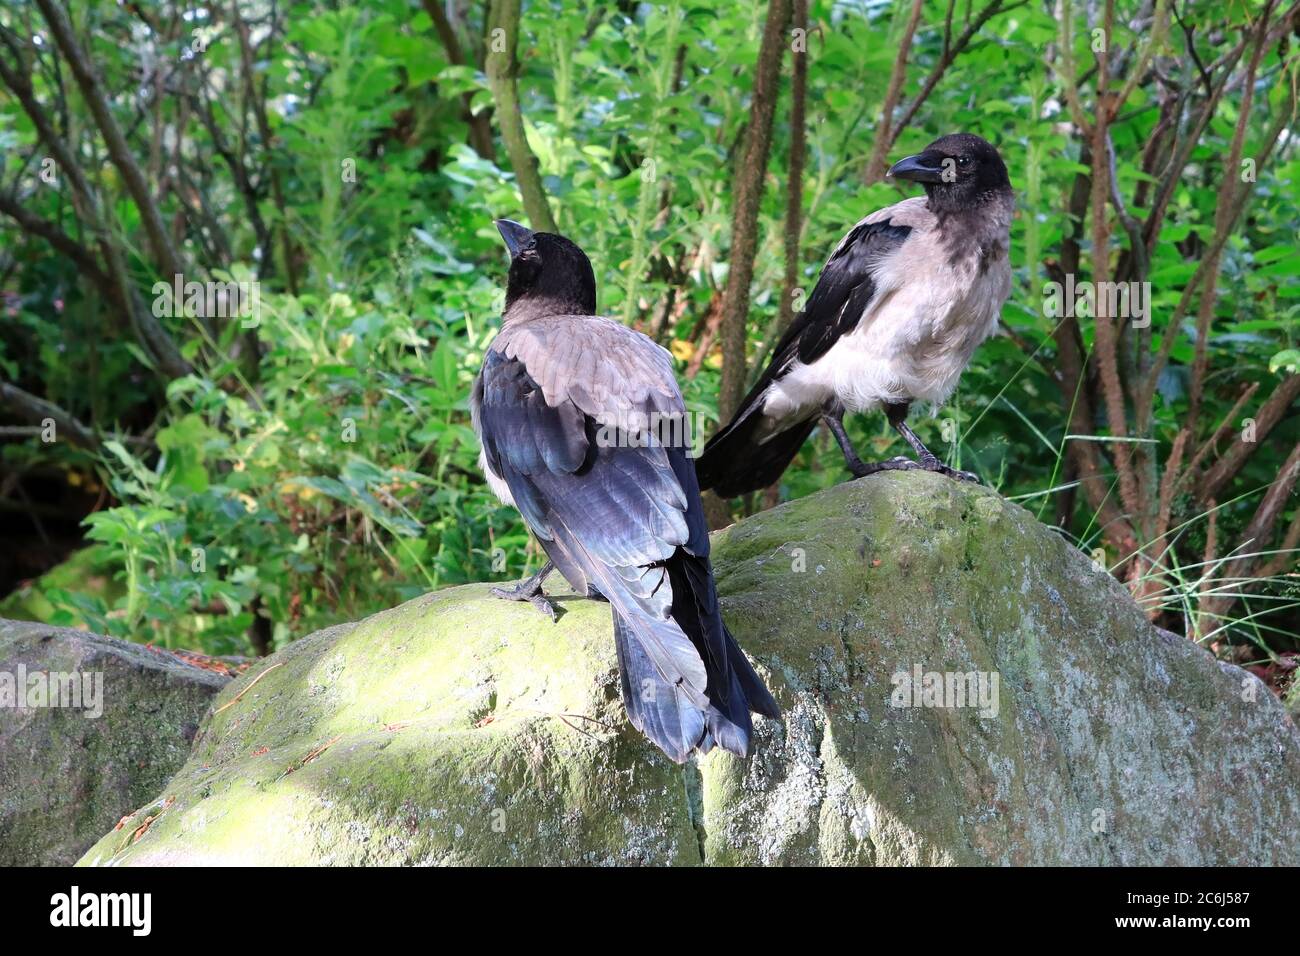 Due giovani Crows Hooded, Corvus cornix in piedi su una roccia, esplorando il loro ambiente. I giovani corvi esaminano l'ambiente circostante con molta curiosità. Foto Stock